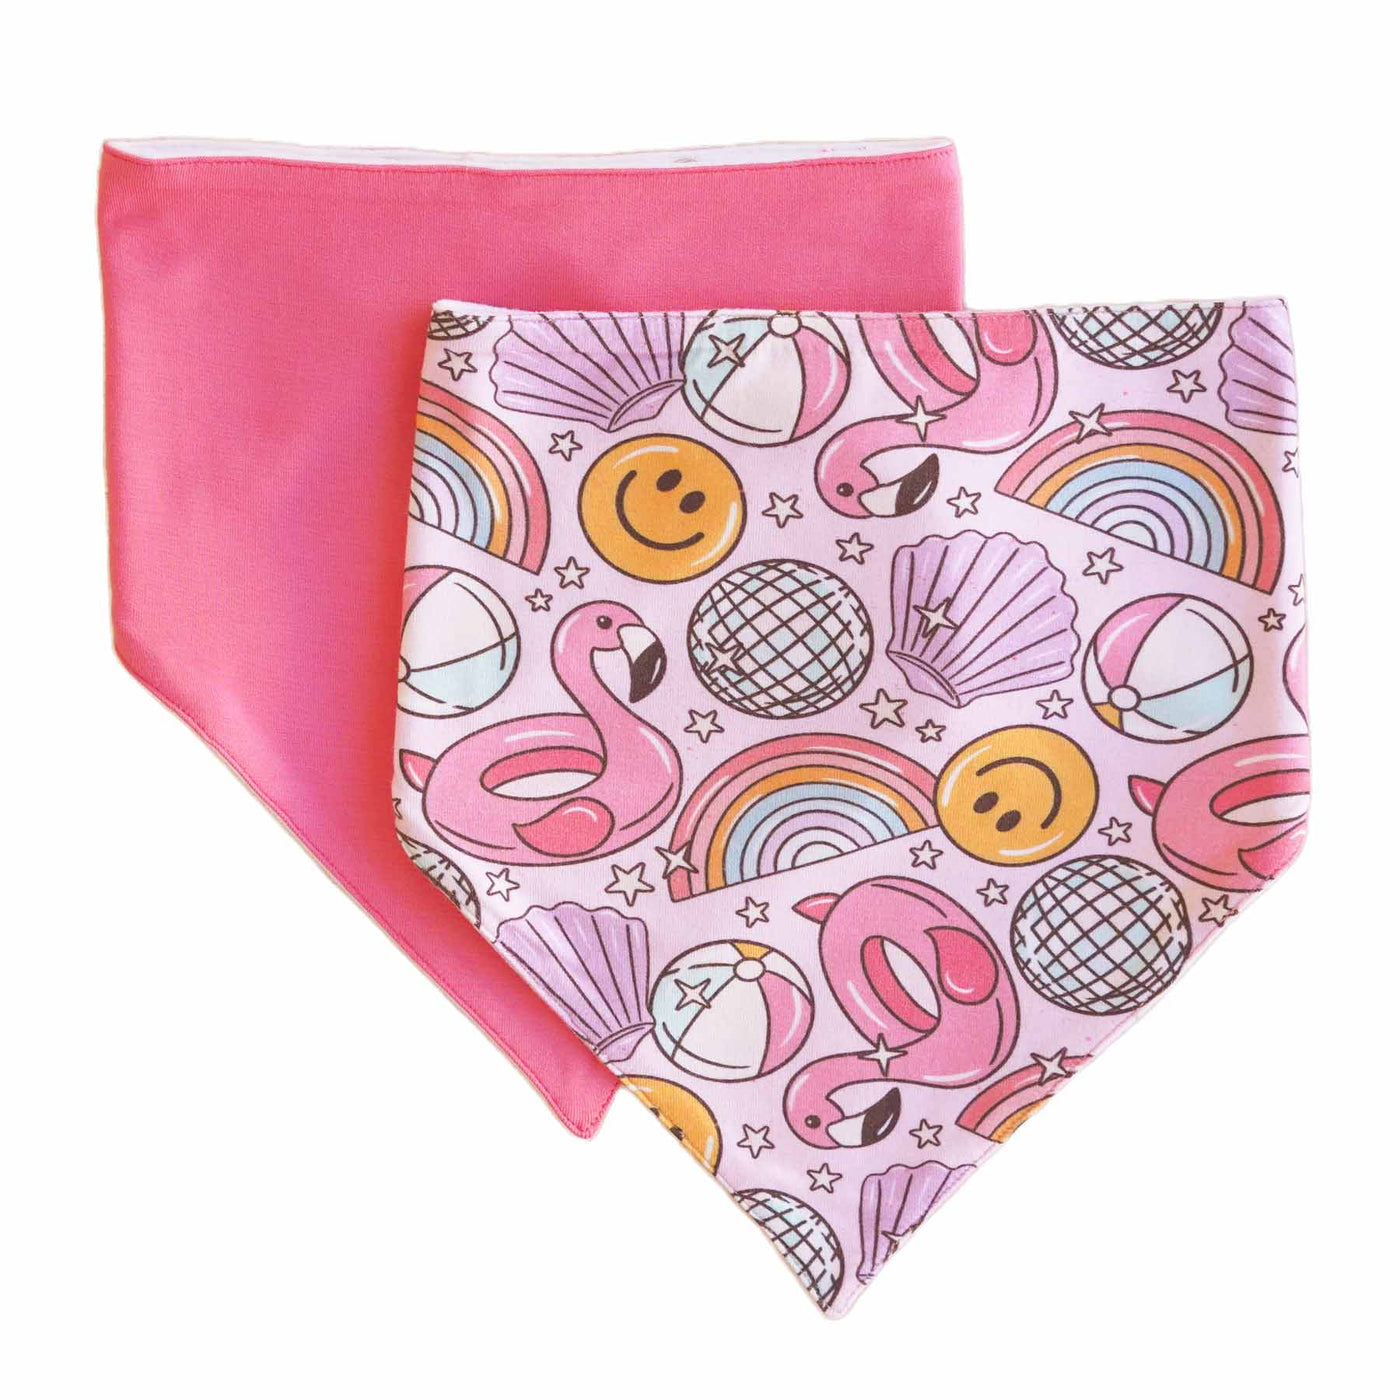 floatie friends pink bandana bib set